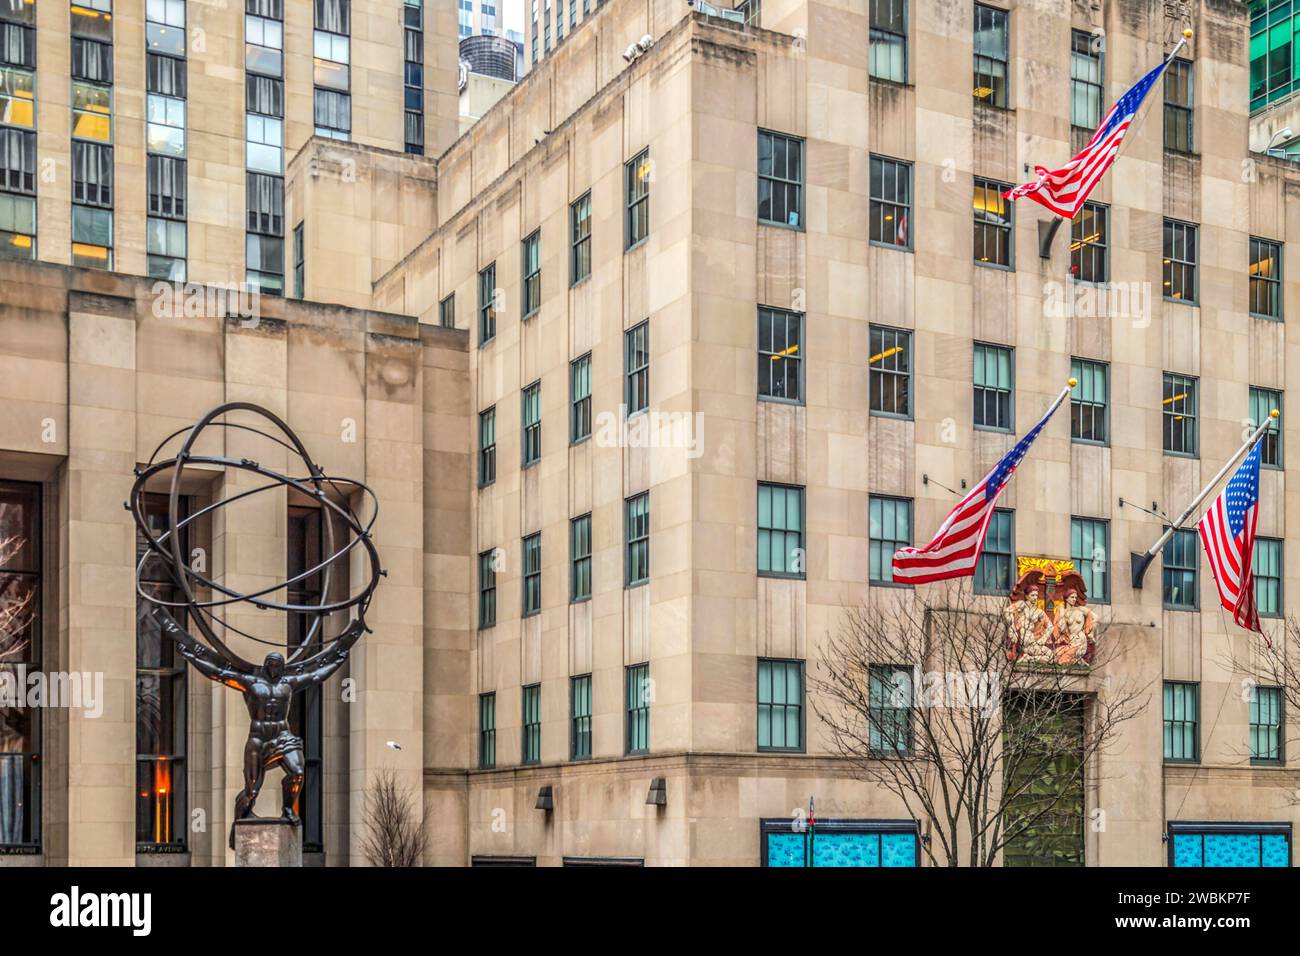 NEW YORK, USA - 6 MARZO 2020: Atlas, una statua di bronzo al Rockefeller Center, Midtown Manhattan. Si trova di fronte sulla Fifth Avenue in St. Patrick's Cathedral Foto Stock